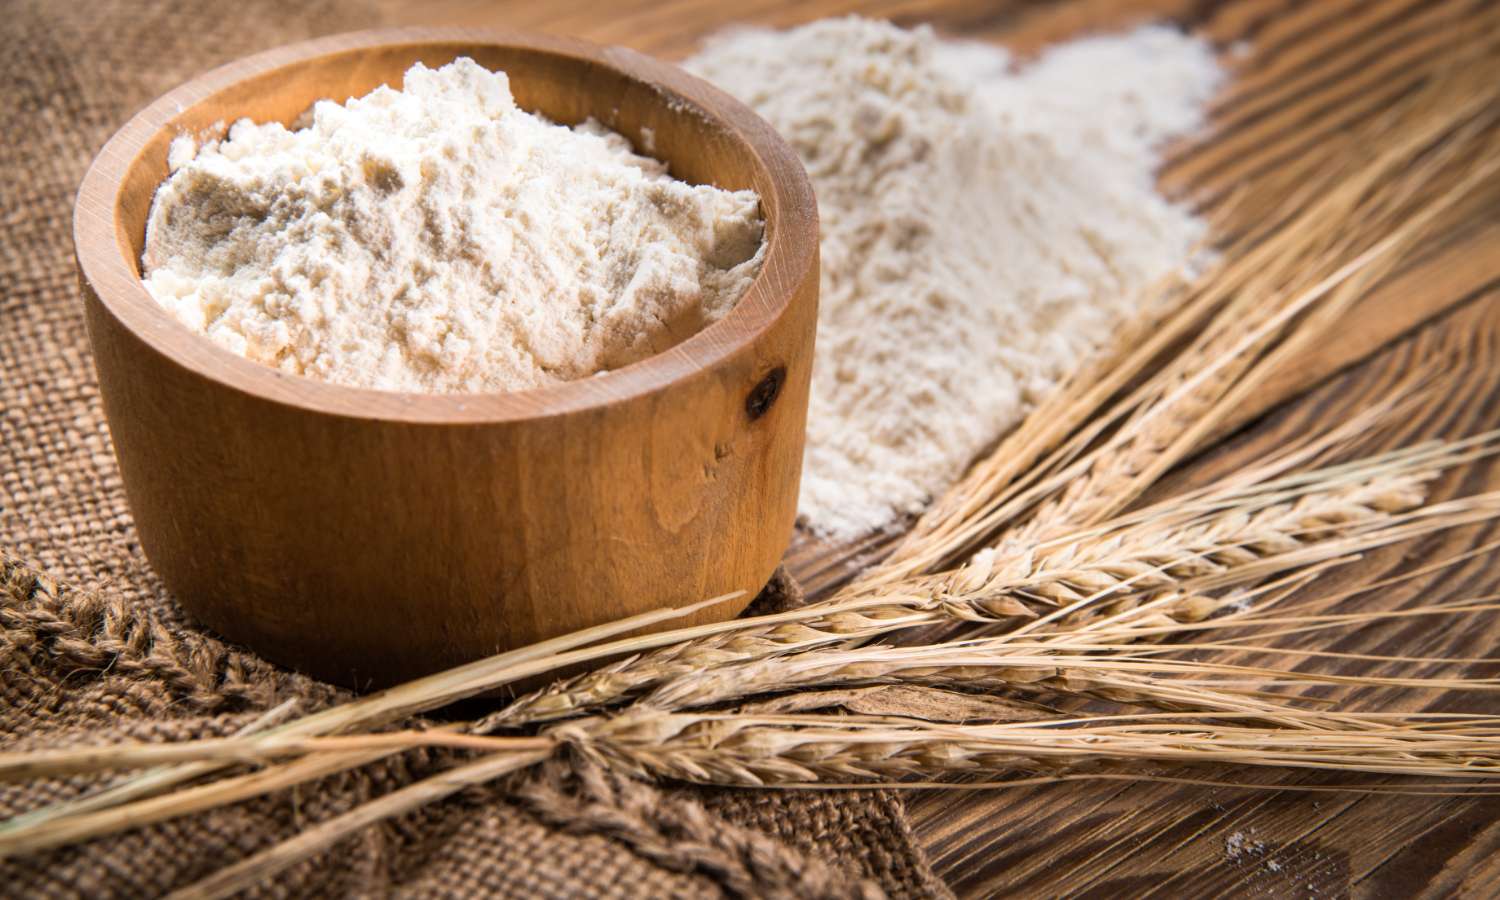 「全粒粉」の小麦粉はどんな特徴があるのか、なぜ少し茶色いのか、ブランって何なのか